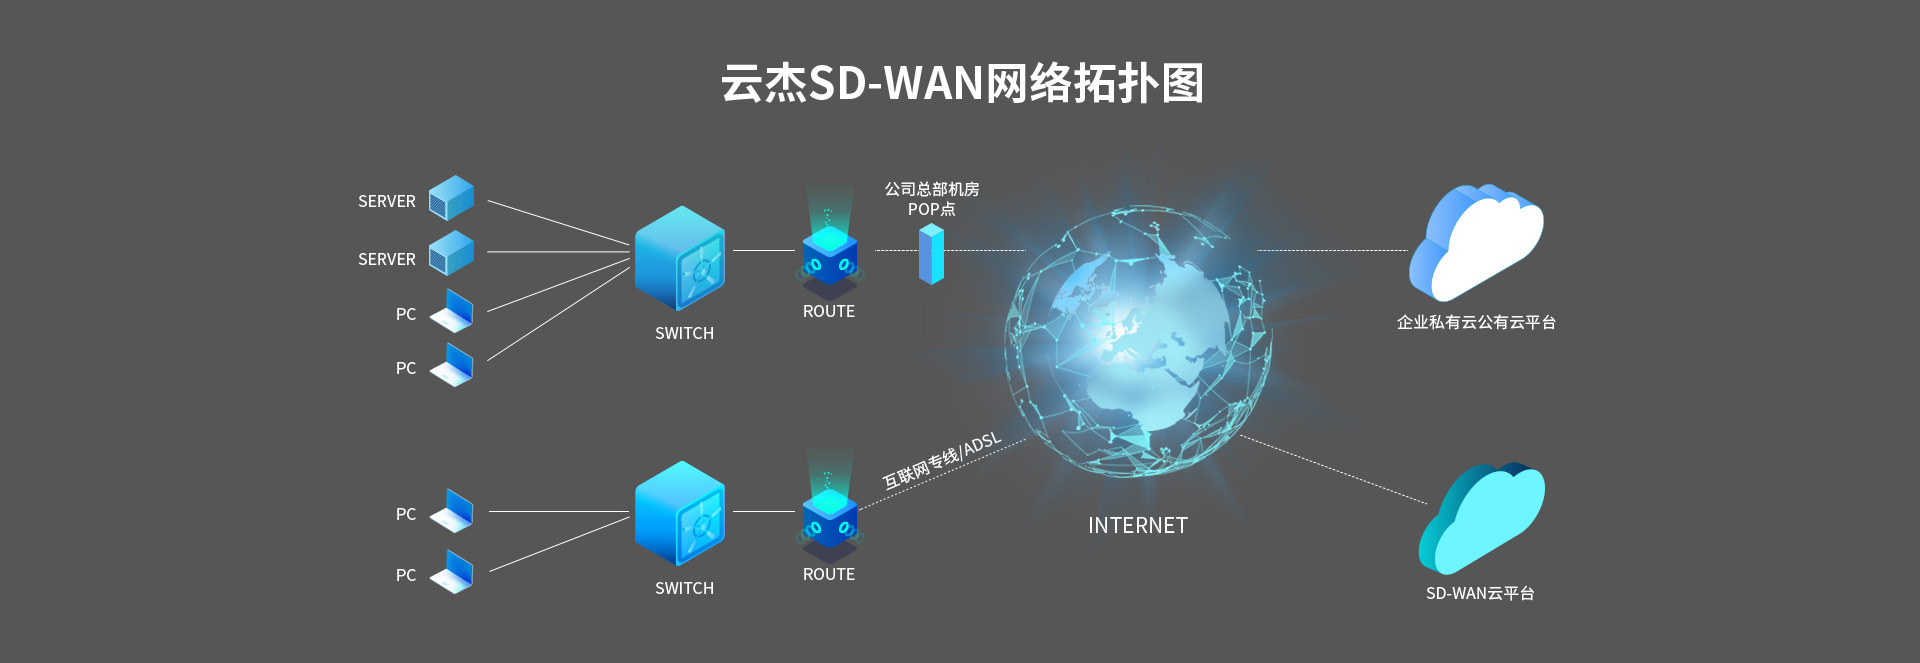 SD-WAN企業云組